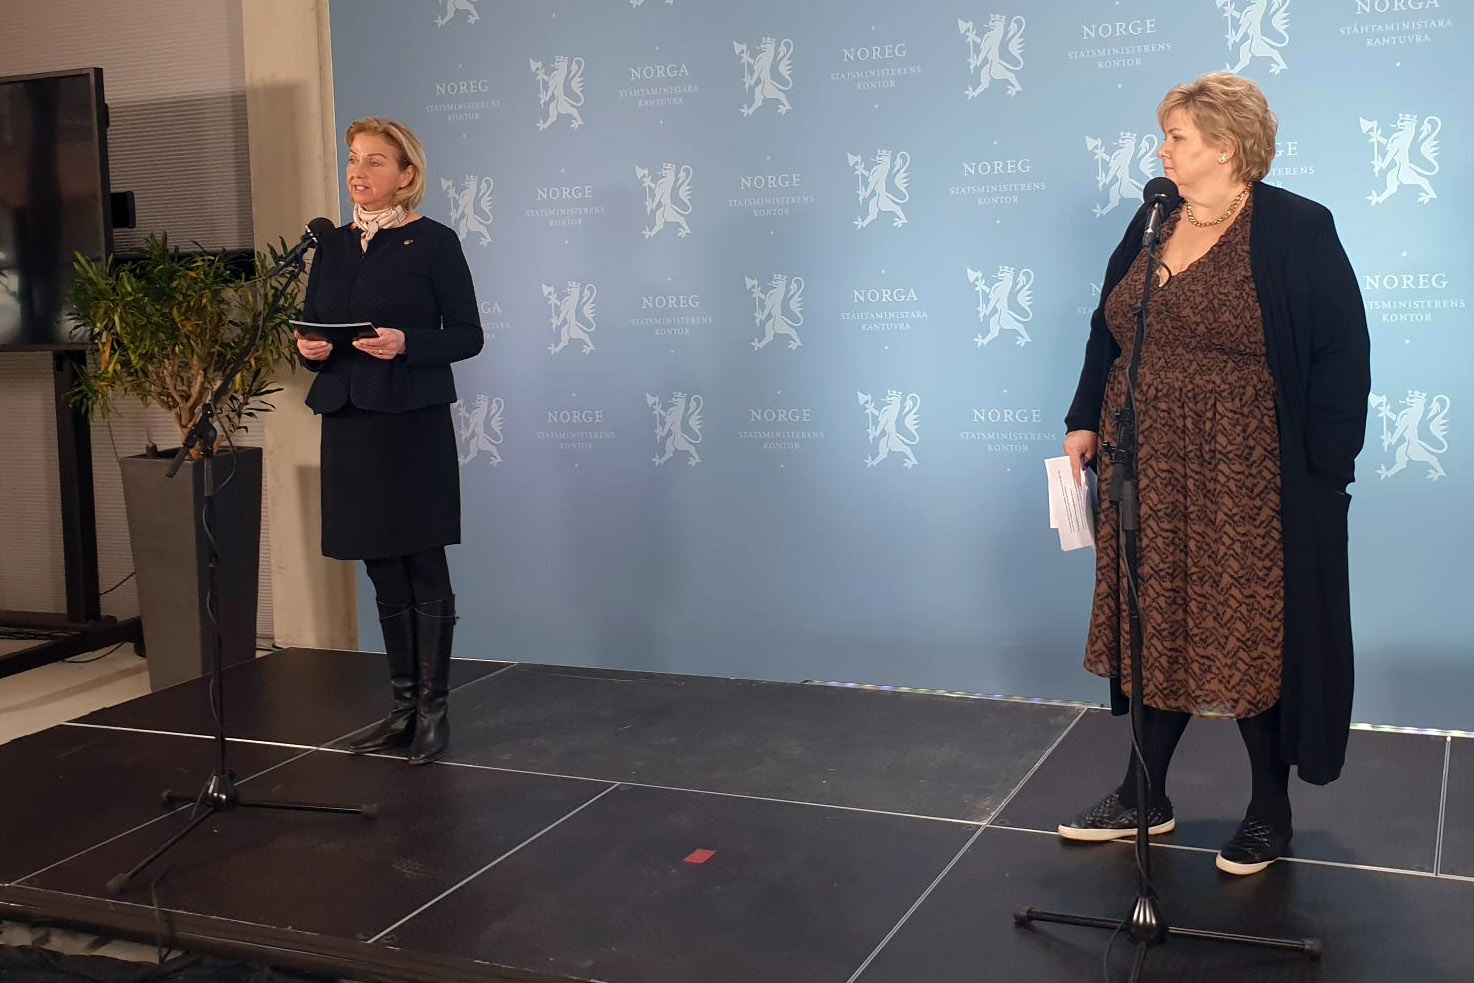 Idrettspresidenten møtte statsminister Erna Solberg: – God og konstruktiv dialog